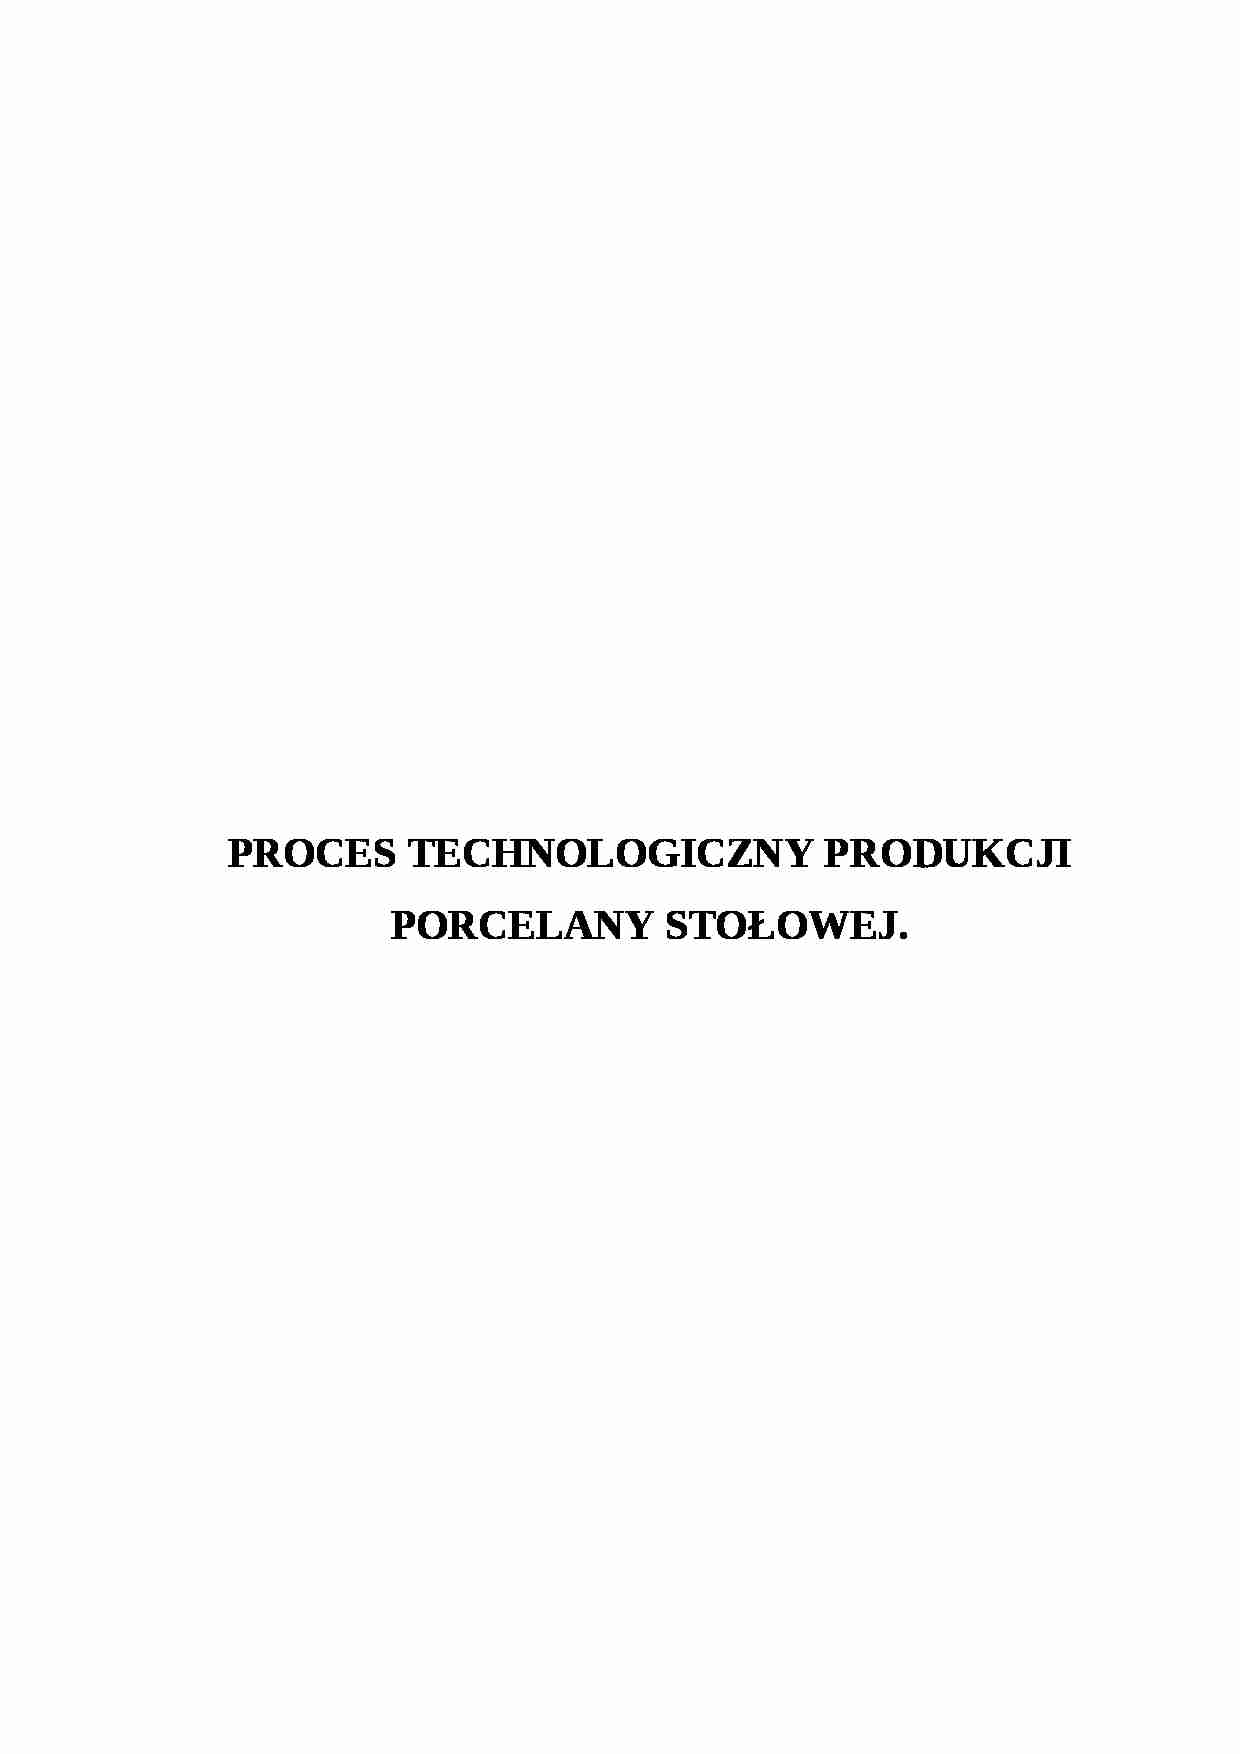 Proces technologiczny produkcji stalowej - omówienie - strona 1